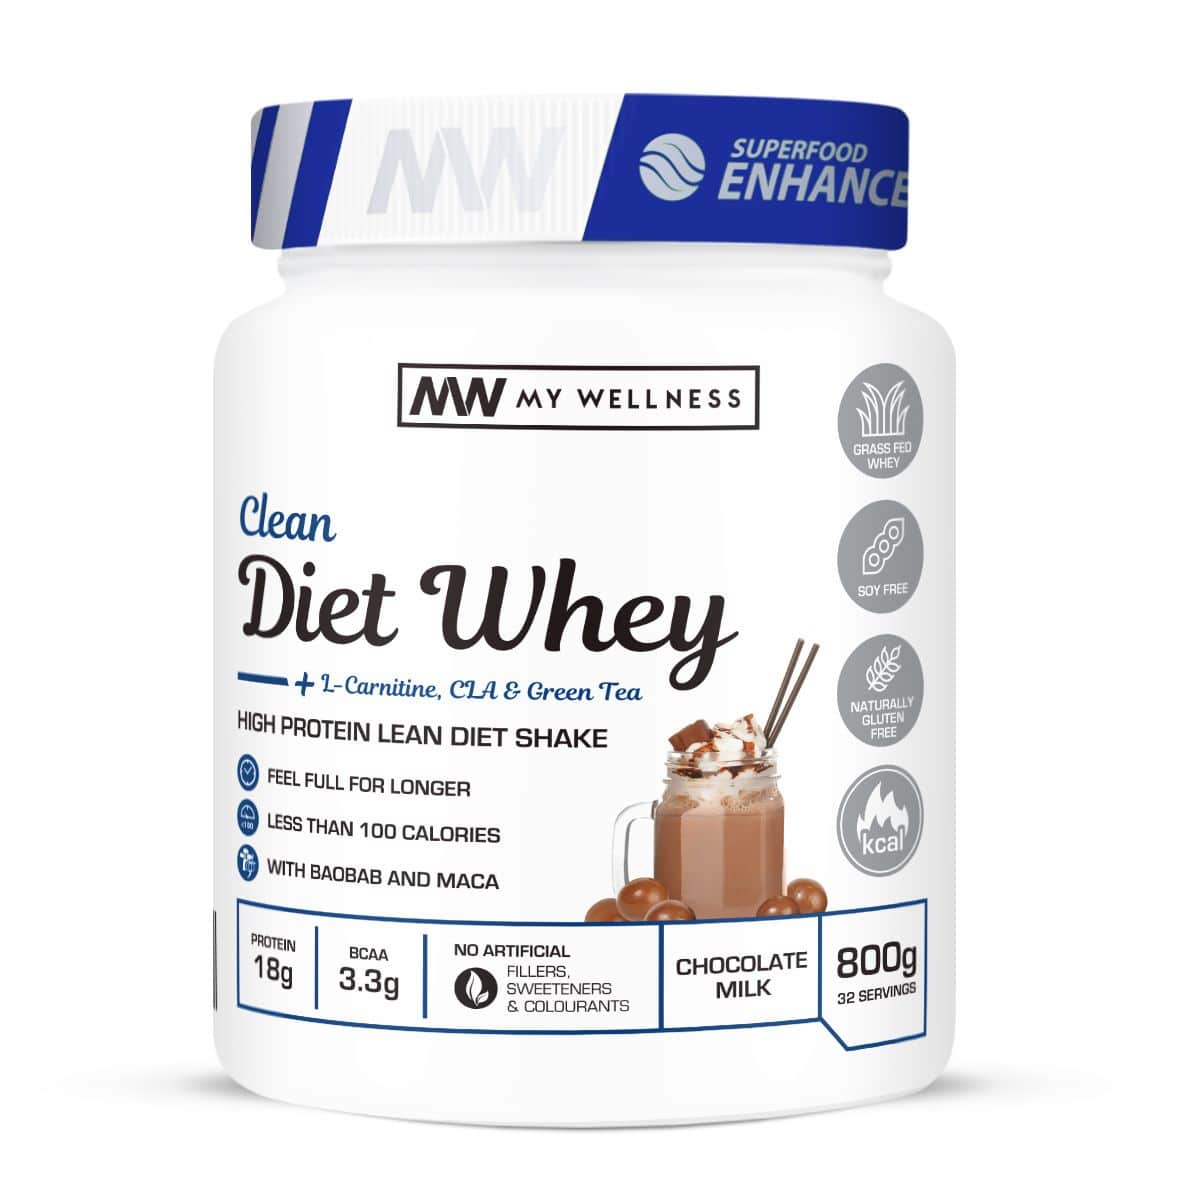 My Wellness - Clean Diet Whey 800g  - Chocolate Milk